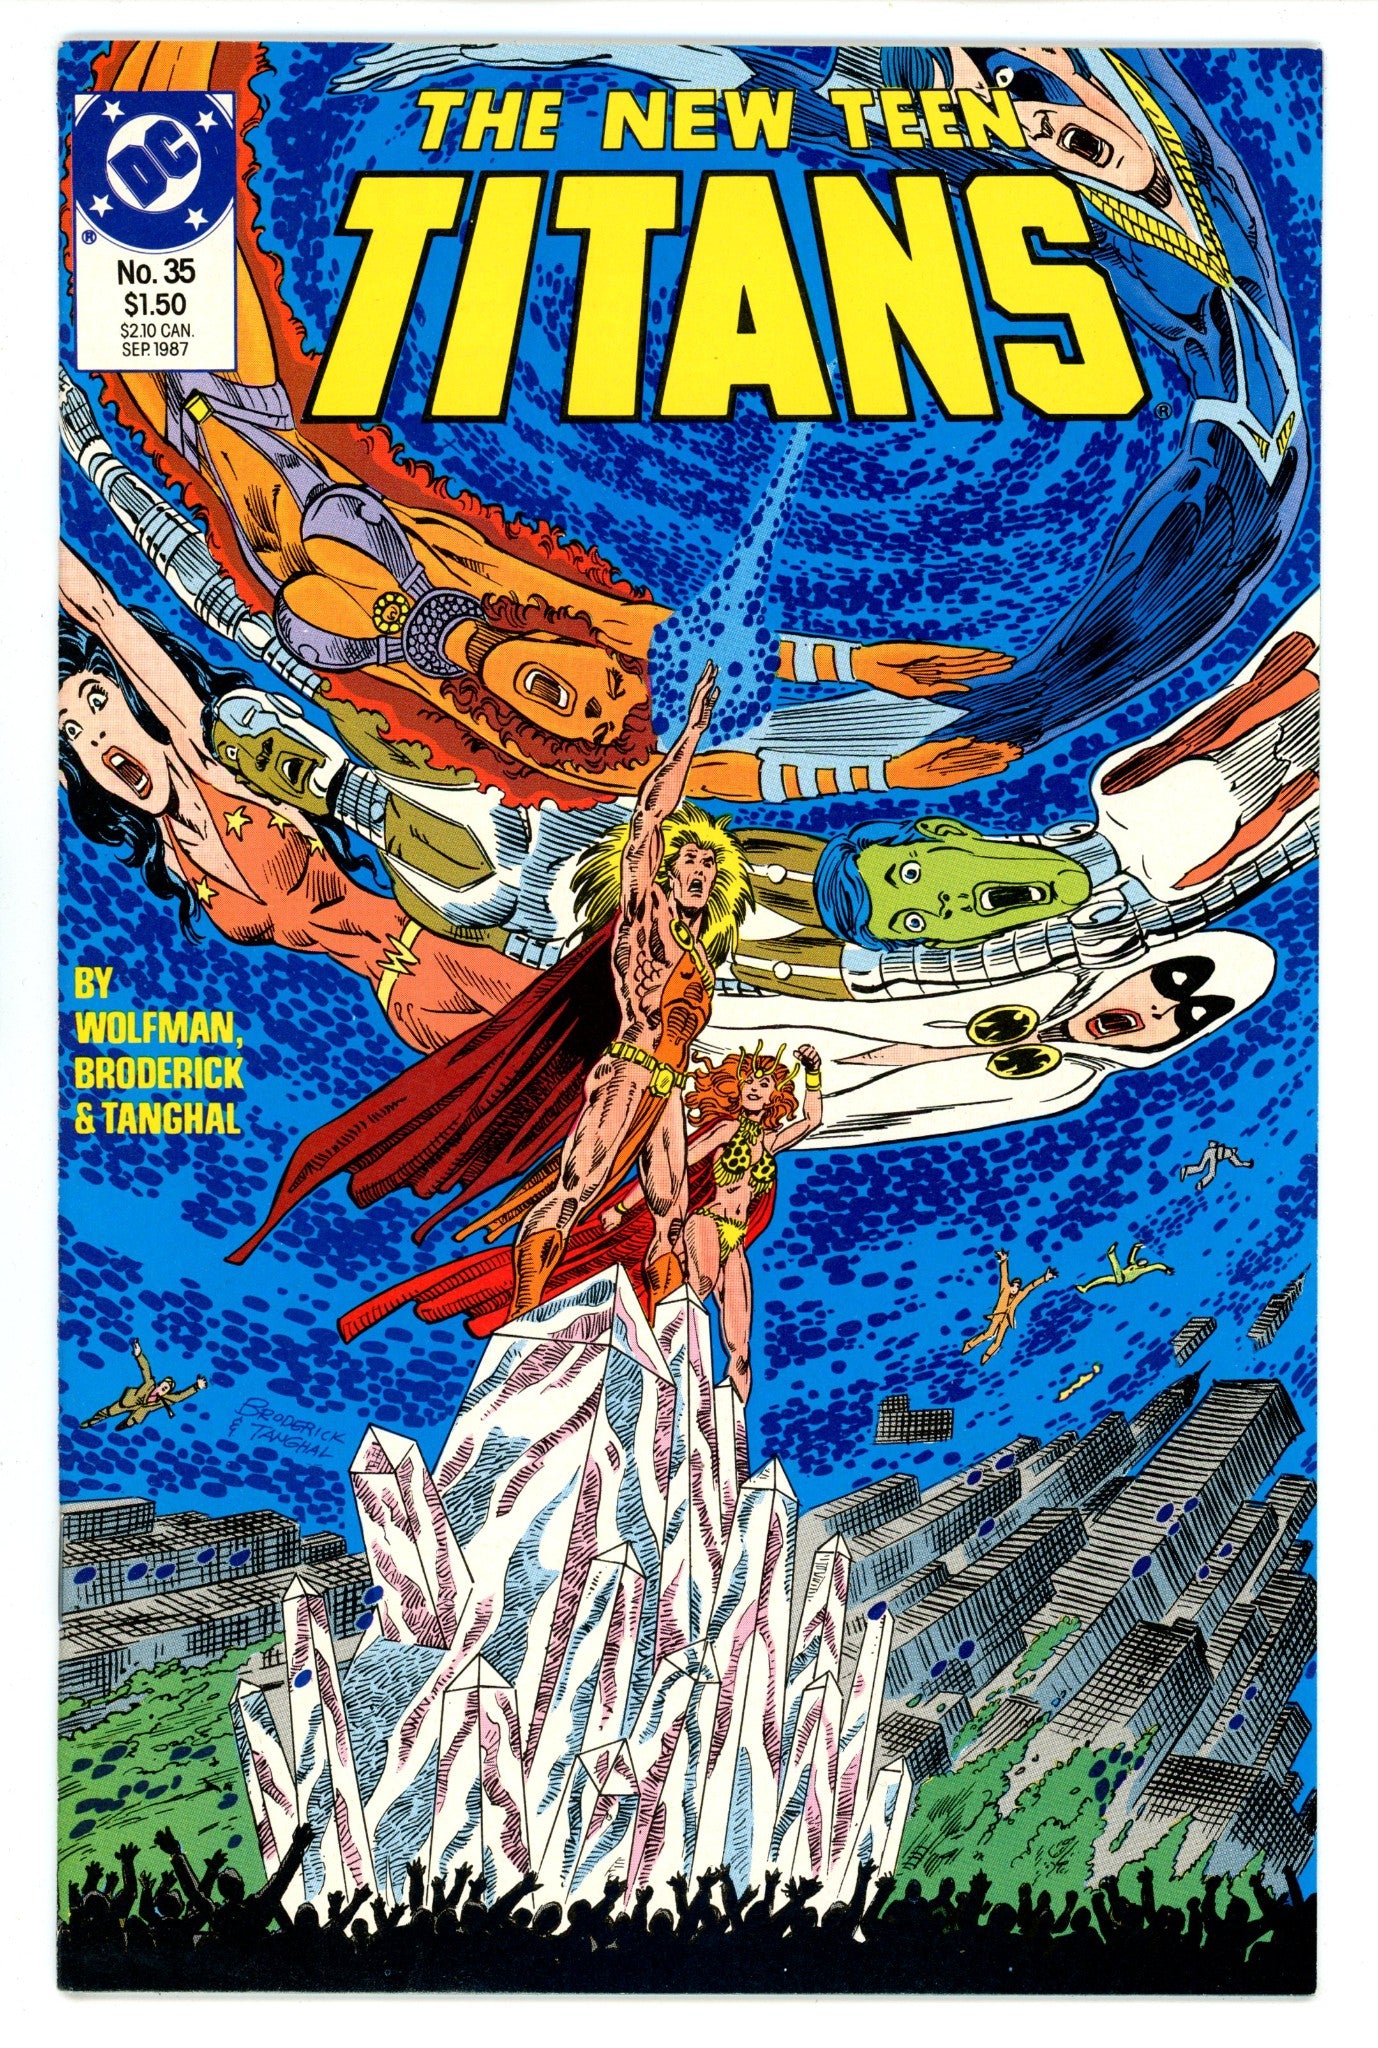 The New Teen Titans Vol 2 35 High Grade (1987) 